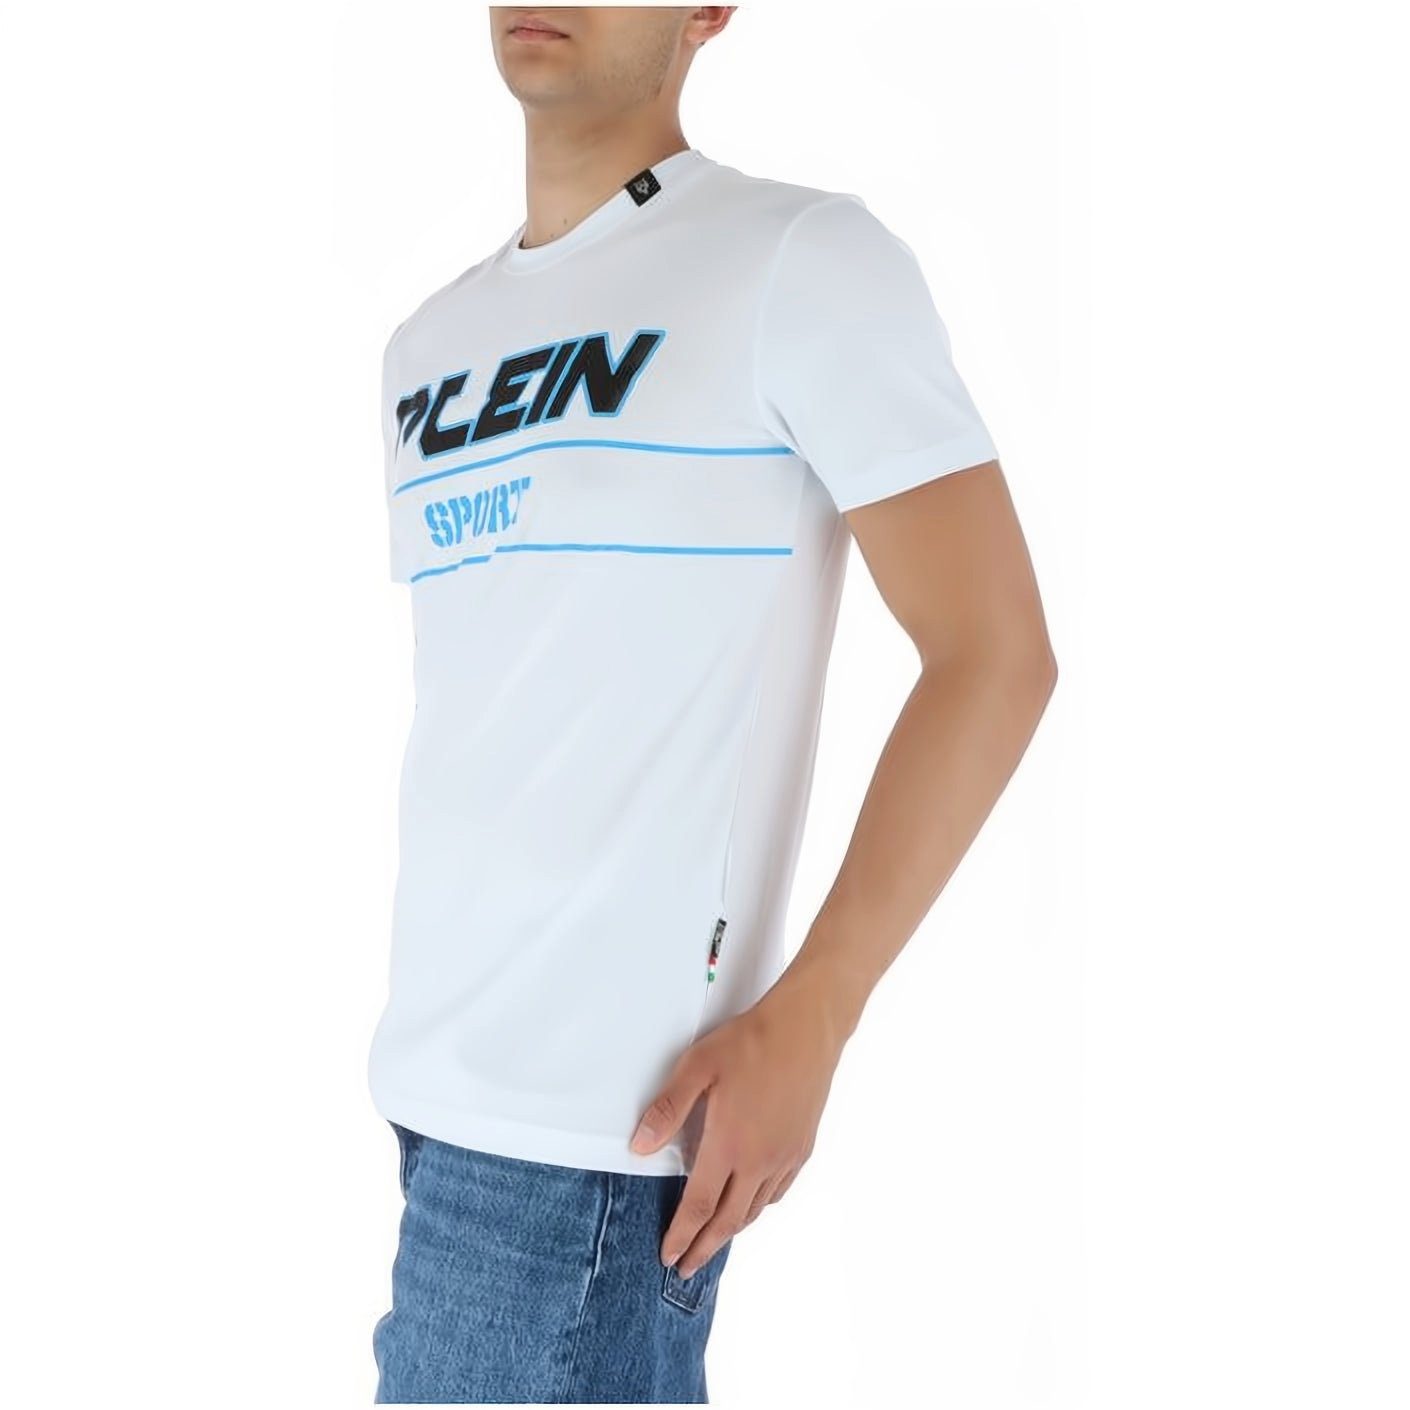 Tragekomfort, Farbauswahl hoher ROUND SPORT Look, PLEIN Stylischer NECK T-Shirt vielfältige